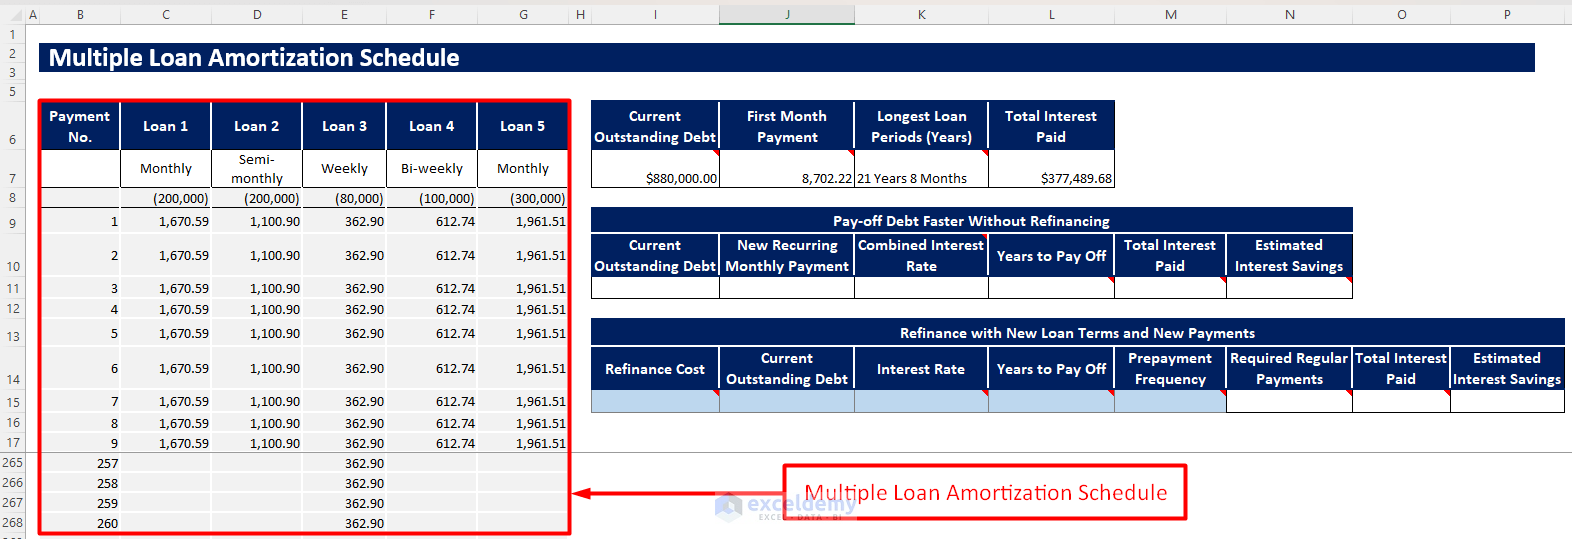 Multiple Loan Amortization Schedule